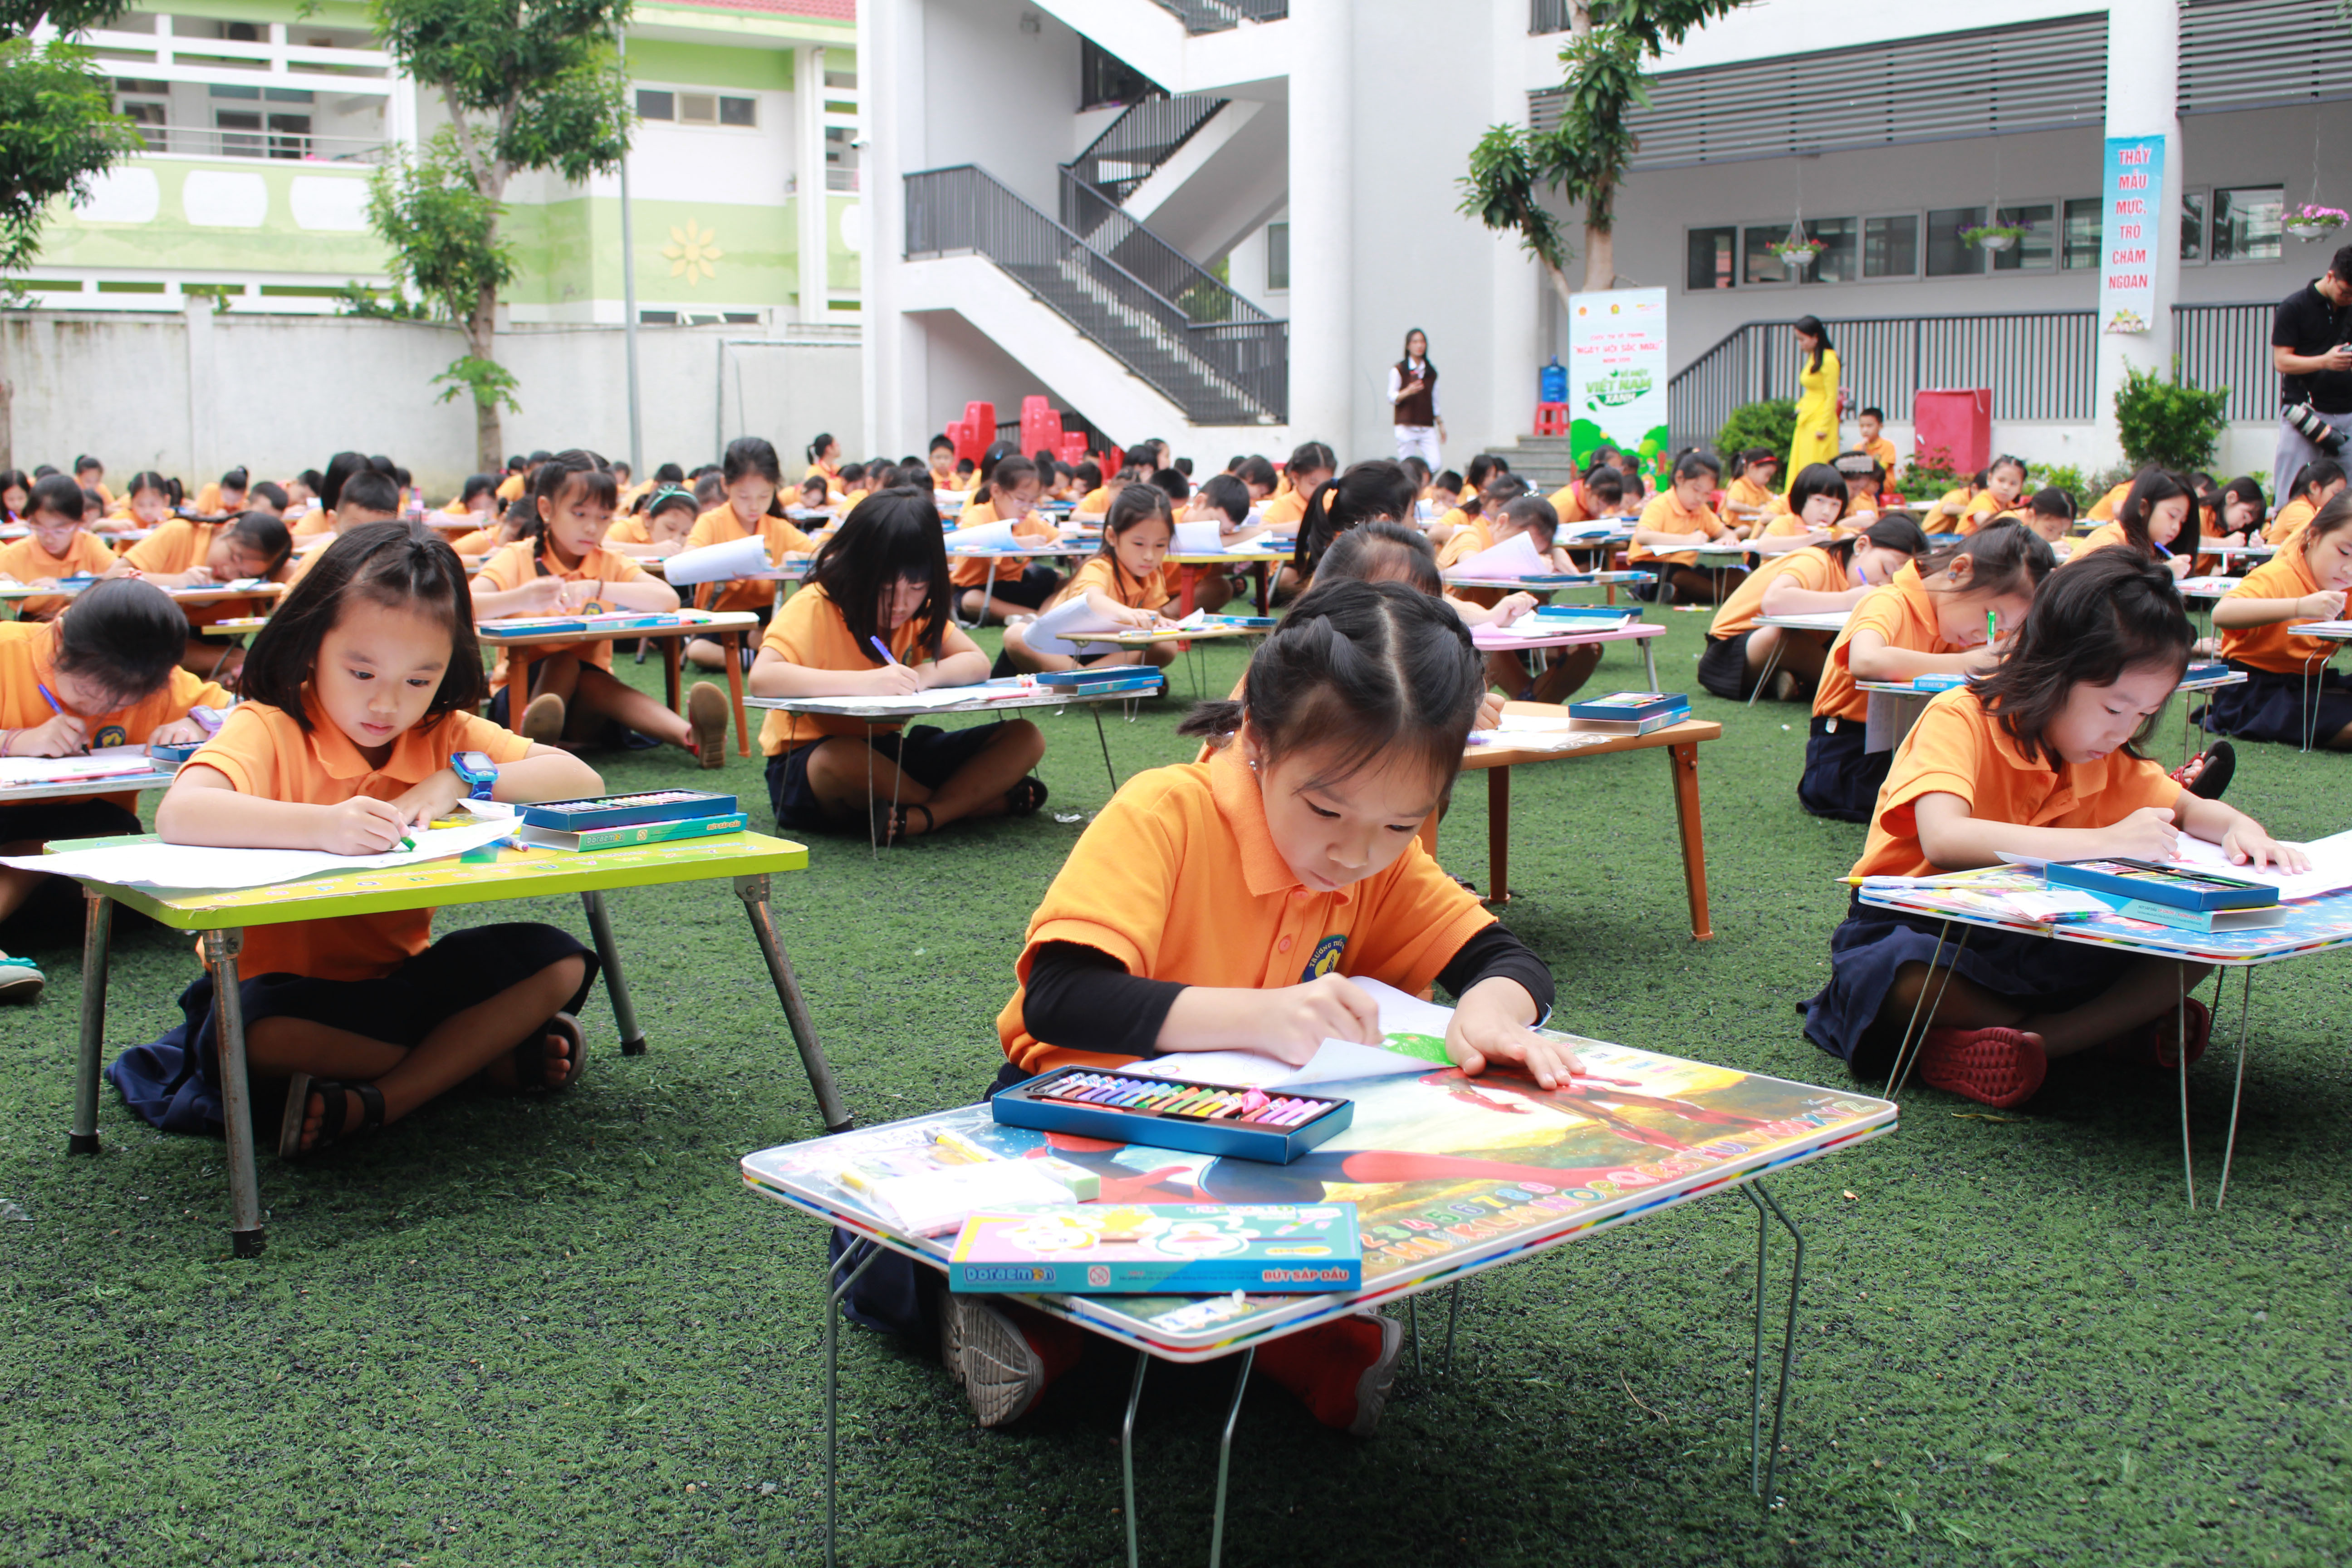 Ngay sau lễ phát động, các em thiếu nhi trường Tiểu học Hưng Phúc, thành phố Vinh đã tham gia vẽ tranh hưởng ứng cuộc thi vẽ tranh với chủ đề “Vì một Việt nam xanh”.